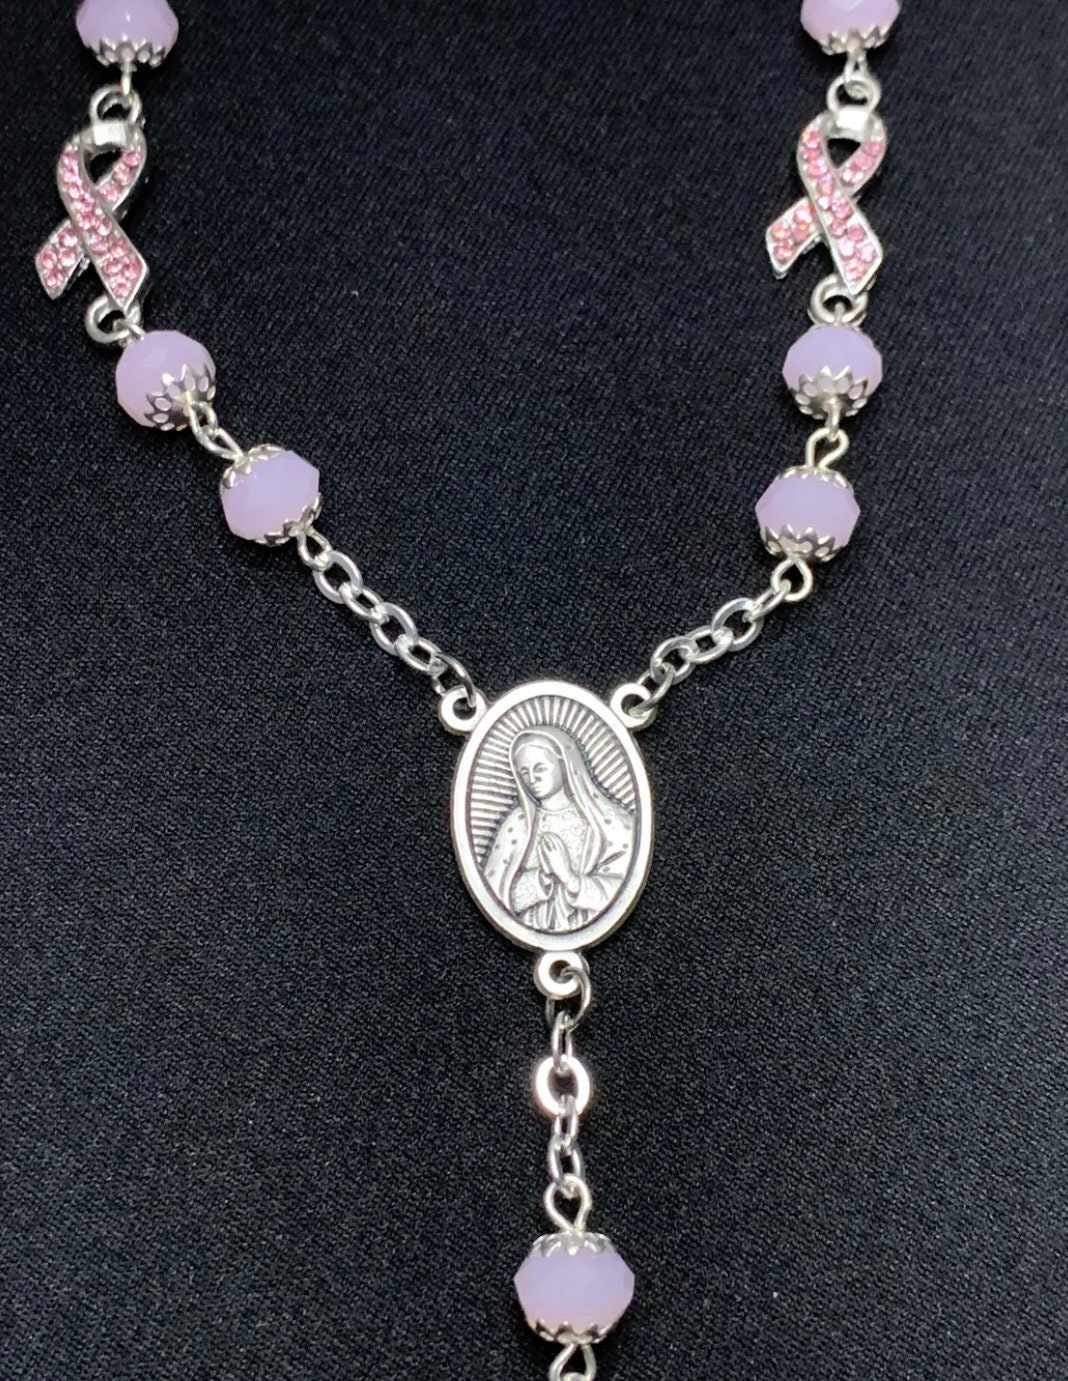 pink ribbon rosary